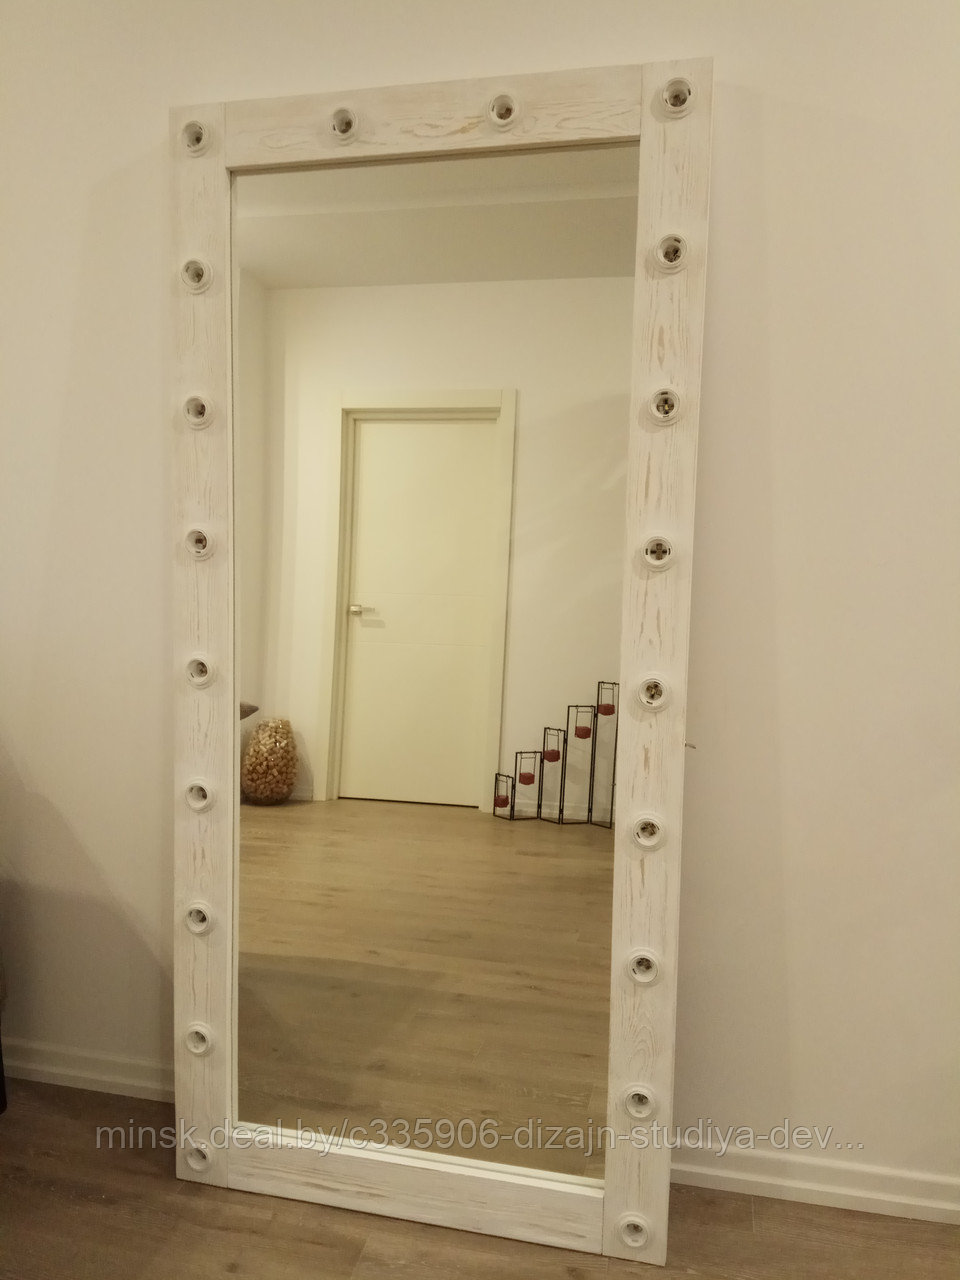 Гримерное зеркало напольное.Брашированная древесина. 100% Handmade, фото 1